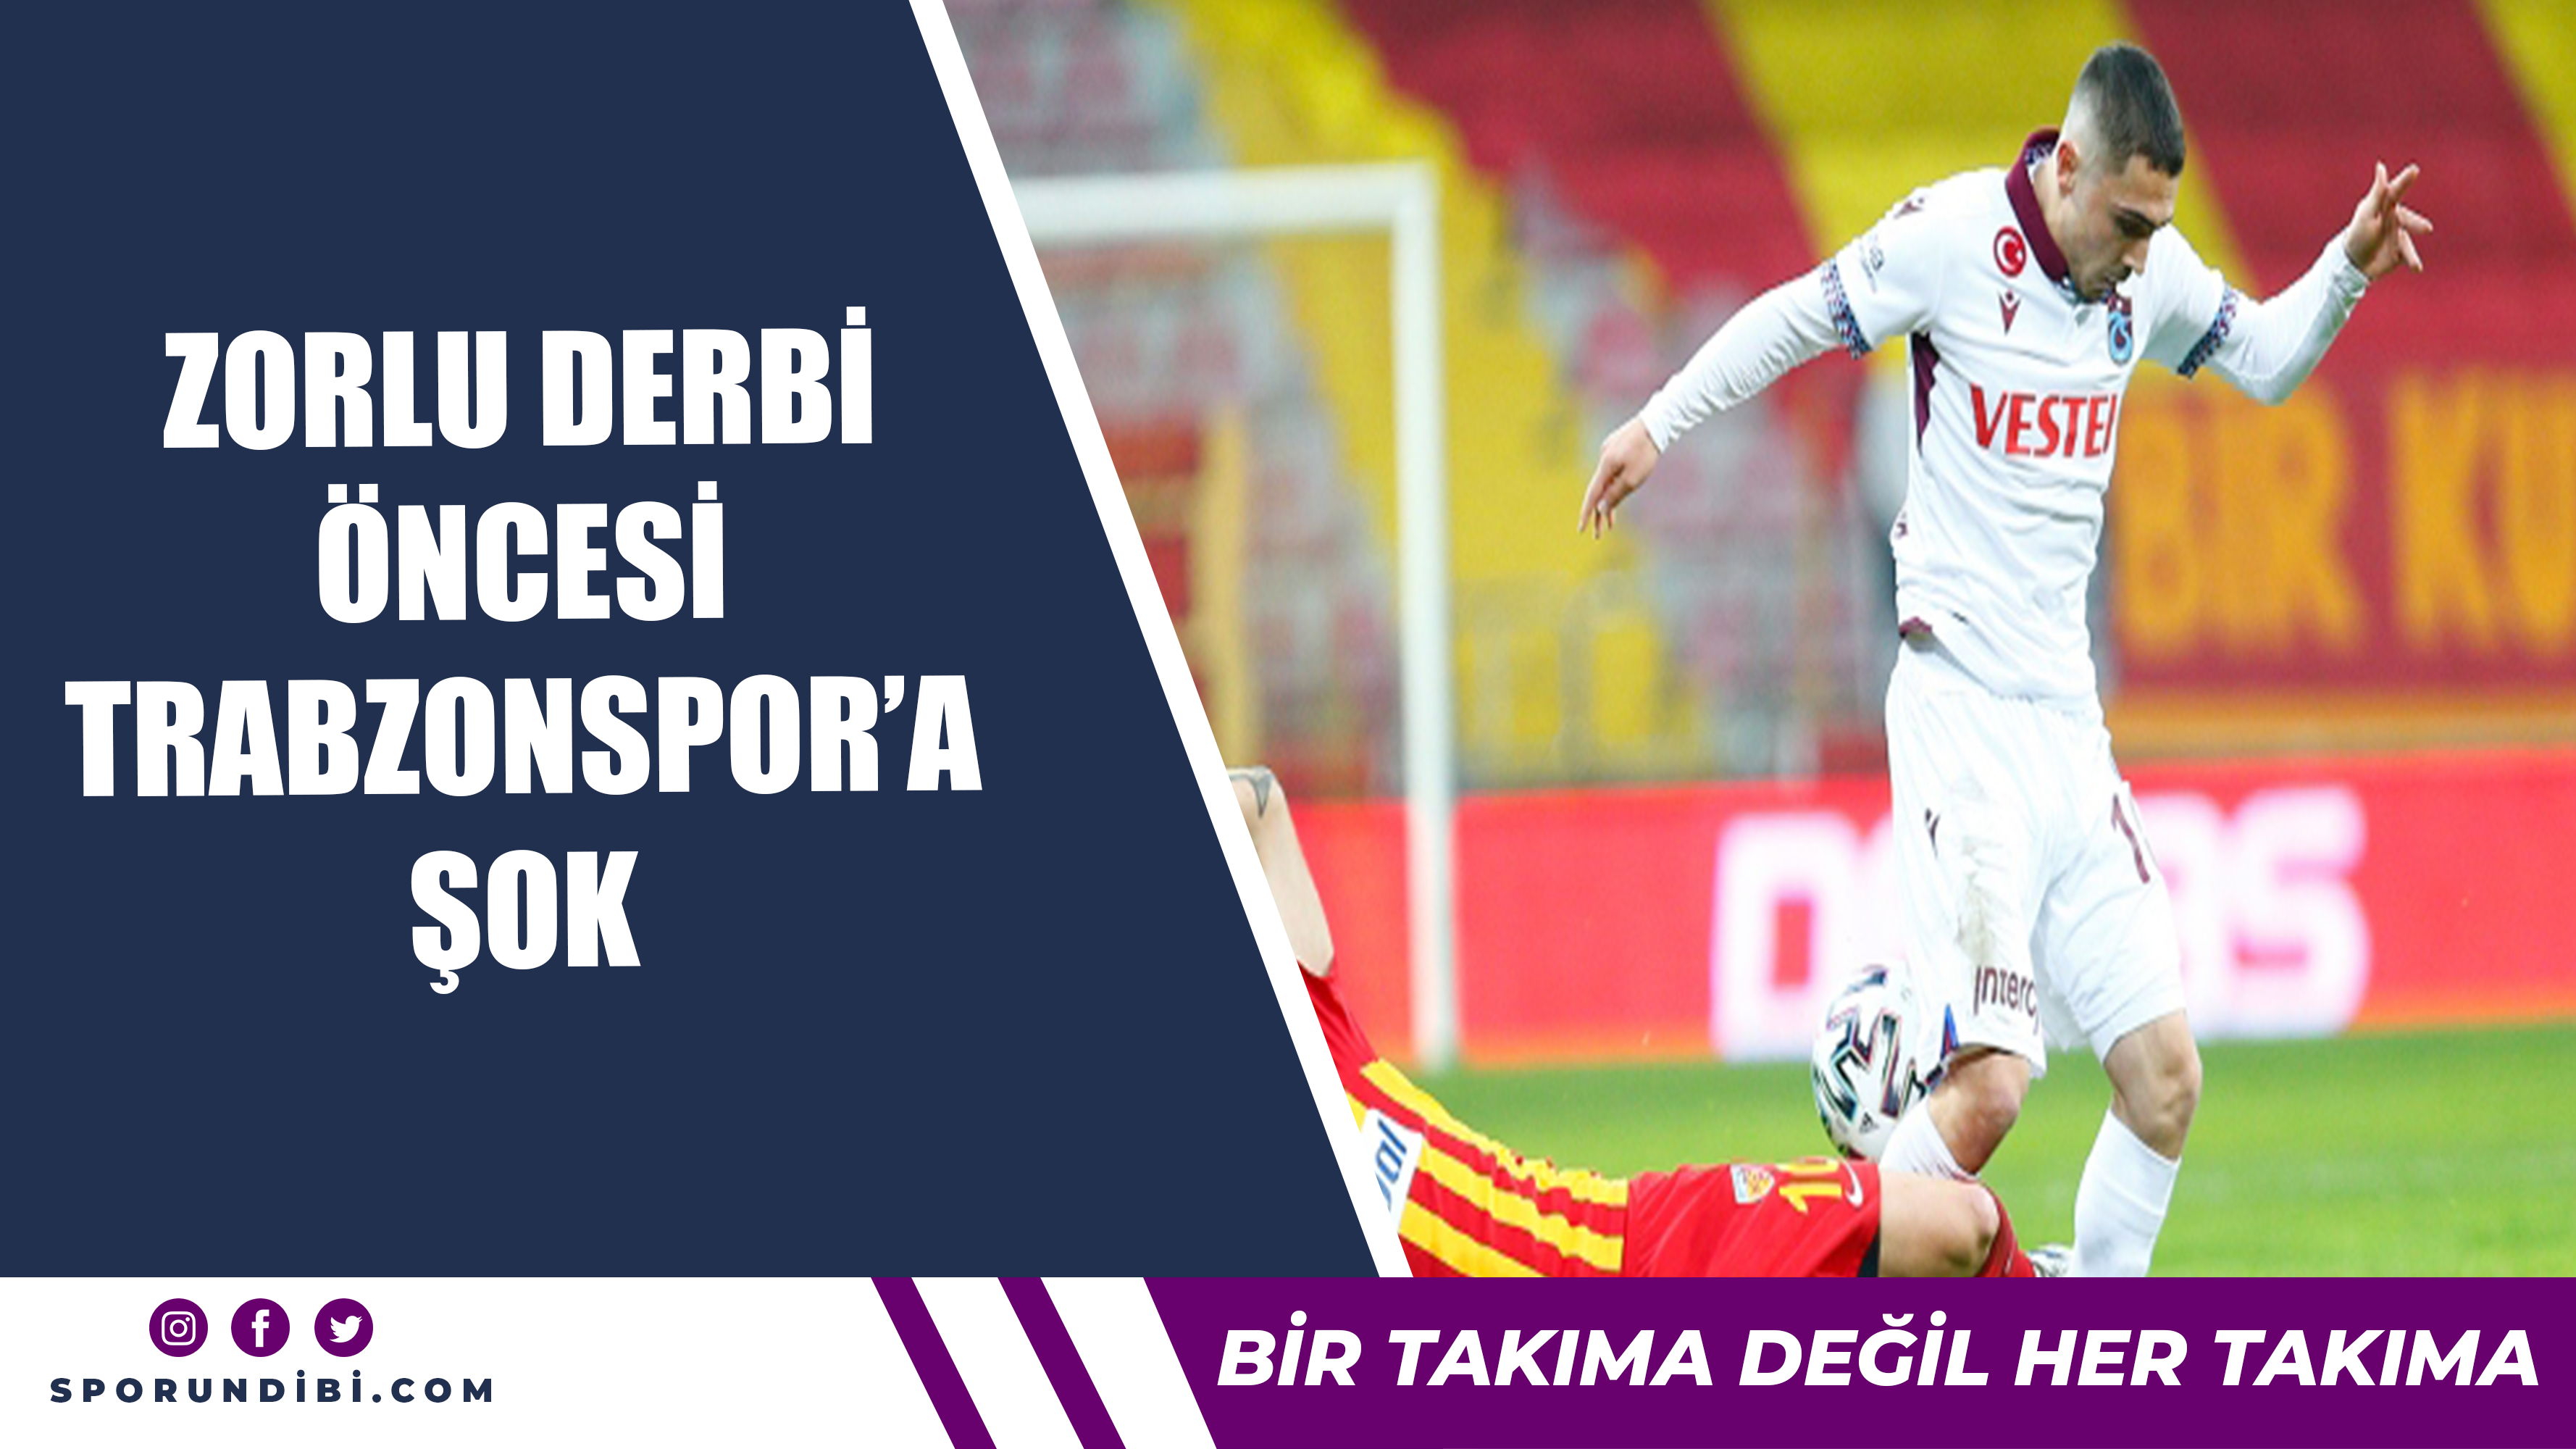 Zorlu derbi öncesi Trabzonspor'da Abdulkadir şoku...